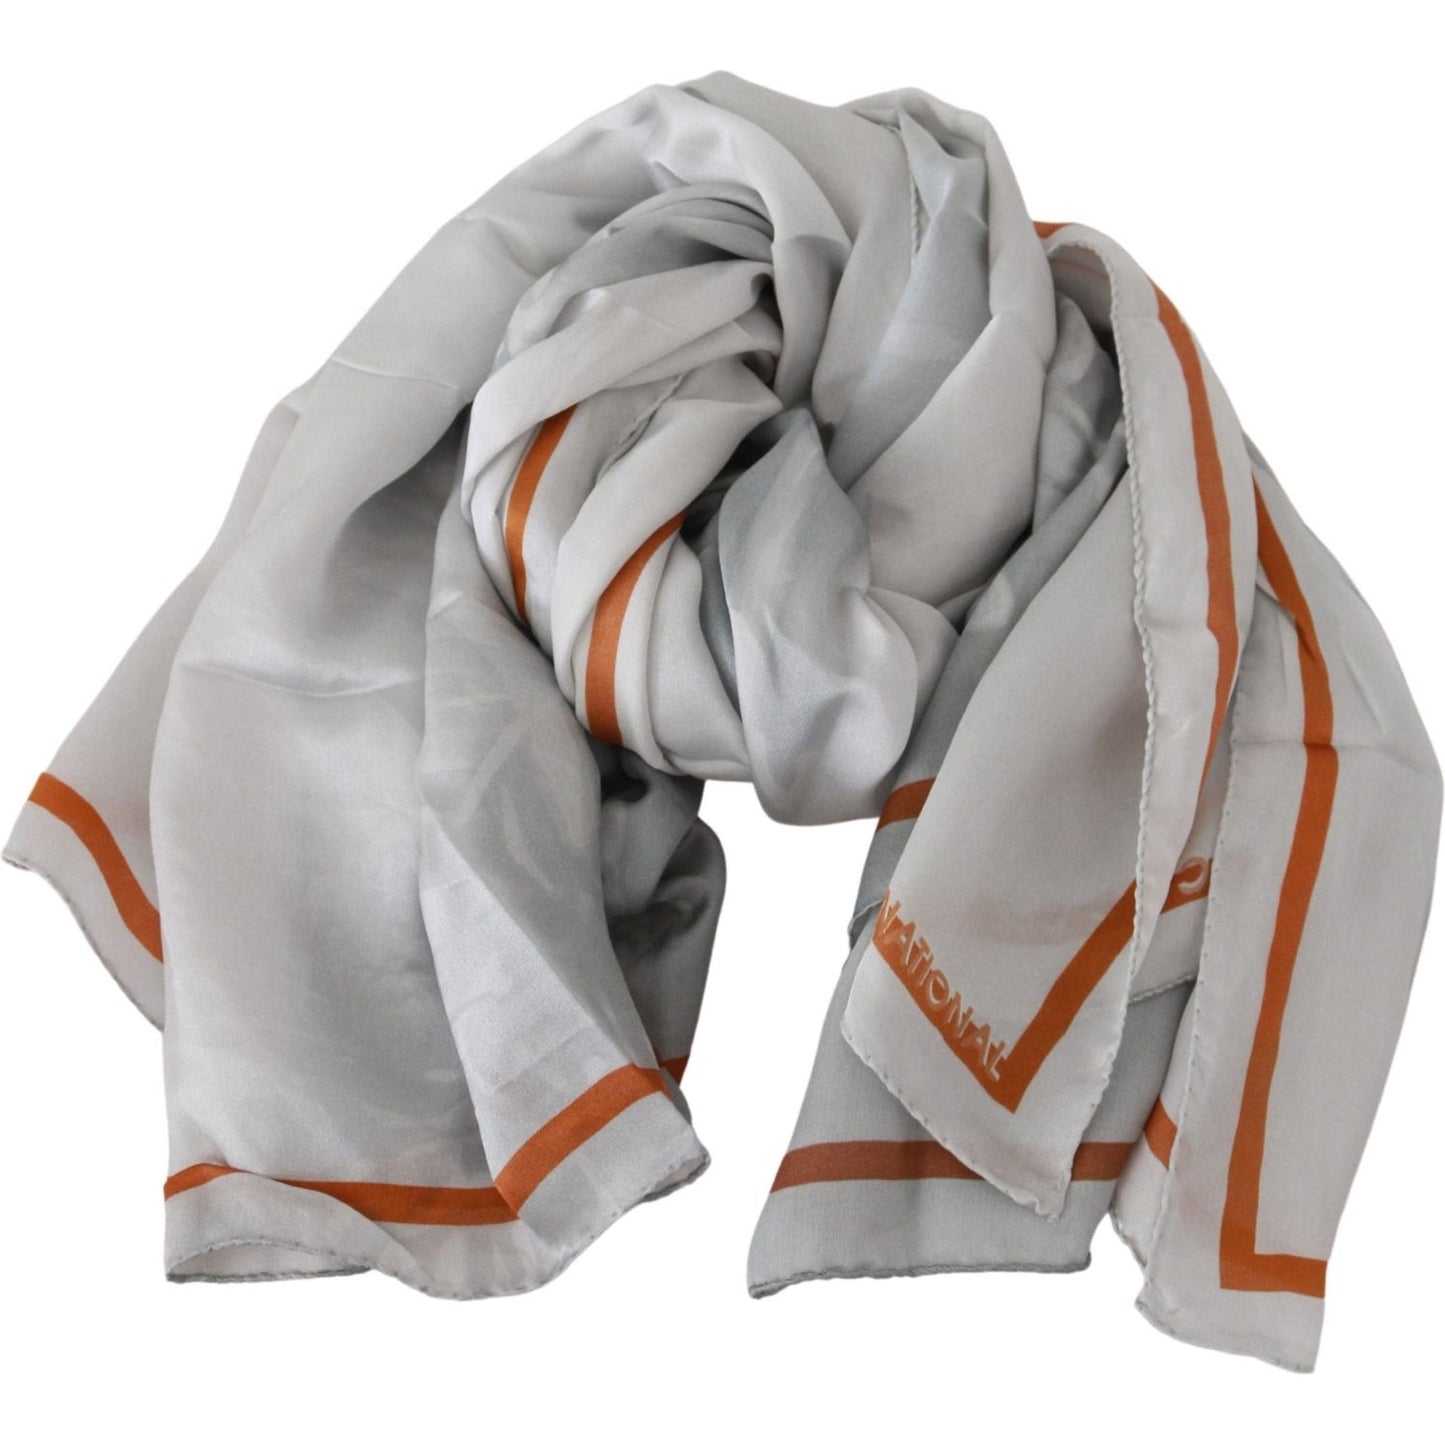 Costume National Elegant Floral Printed Silk Scarf gray-orange-silk-floral-foulard-wrap-scarf Silk Wrap Shawls